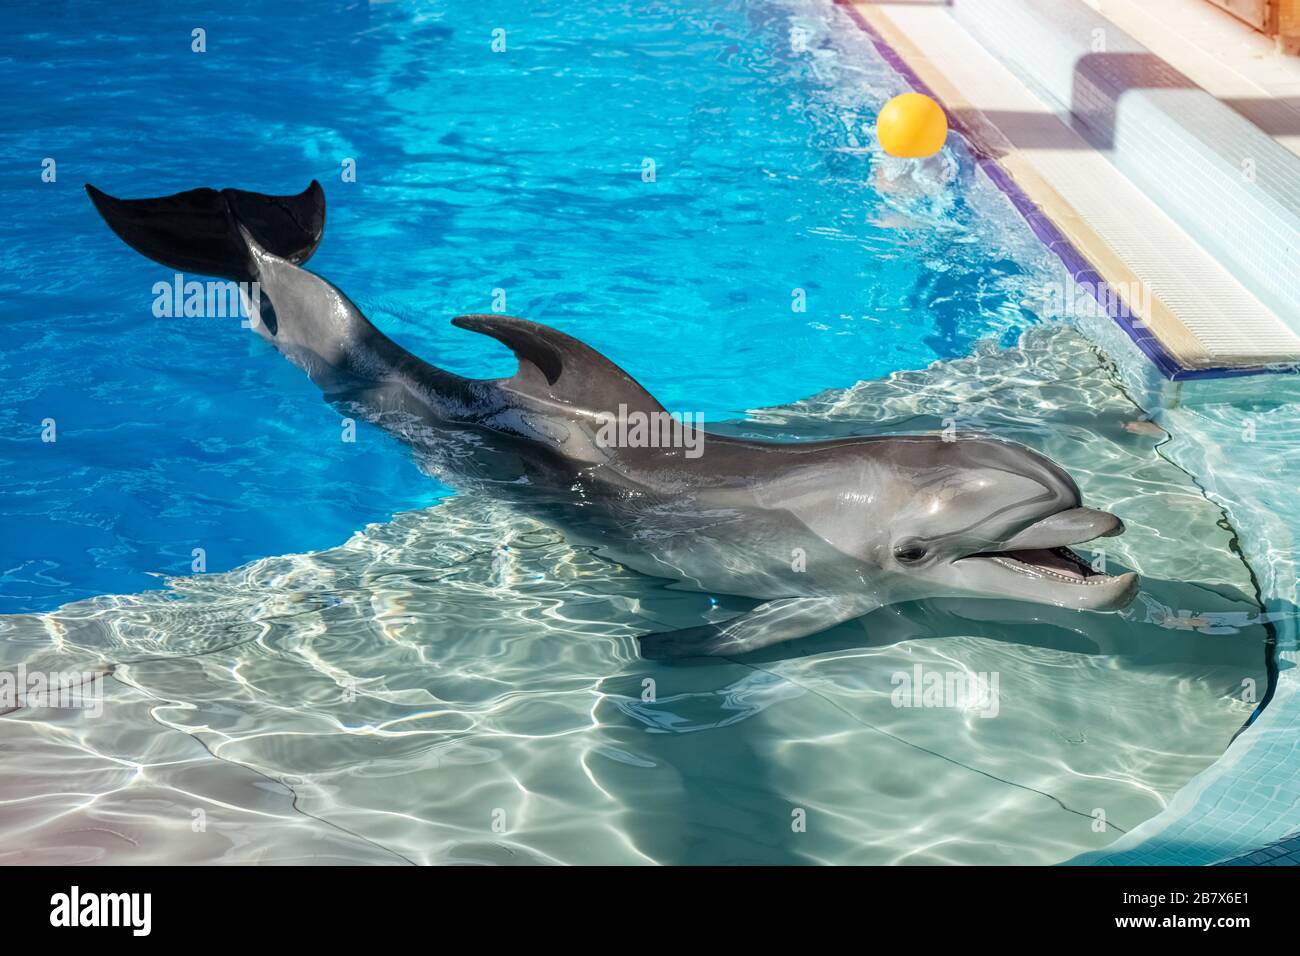 Dauphin formé dans l'aquarium, delphinariums. Spectacle avec les dauphins. L'entraîneur travaille avec un dauphin formé dans la piscine. Espace de copie Banque D'Images